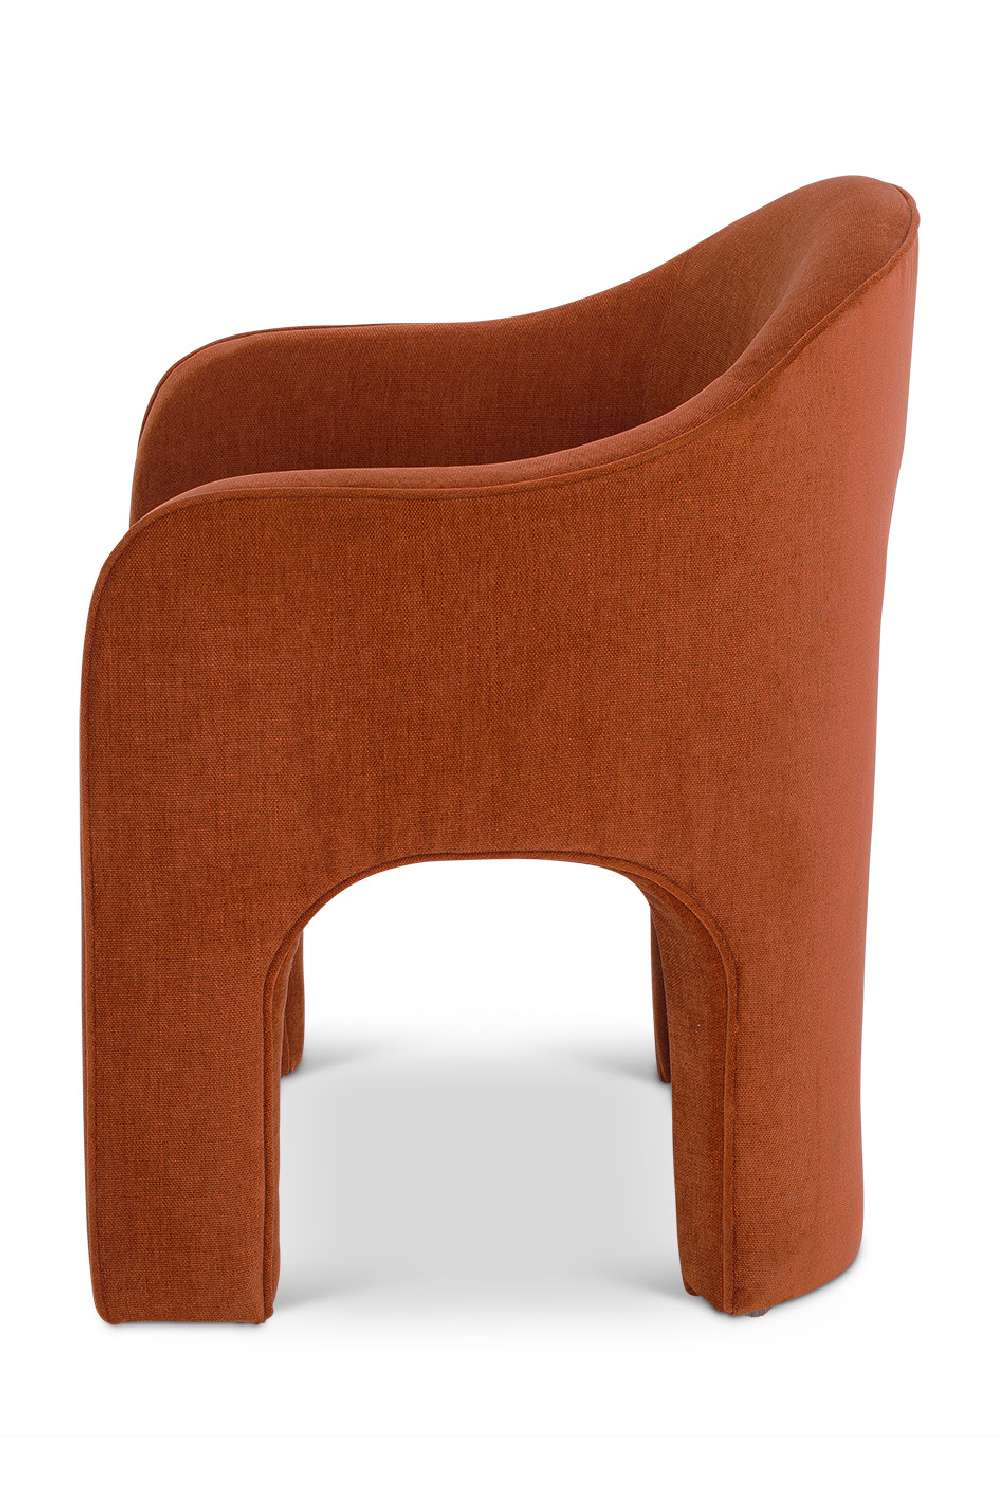 Cut-Out Modern Dining Chair | Liang & Eimil Kara | Oroa.com